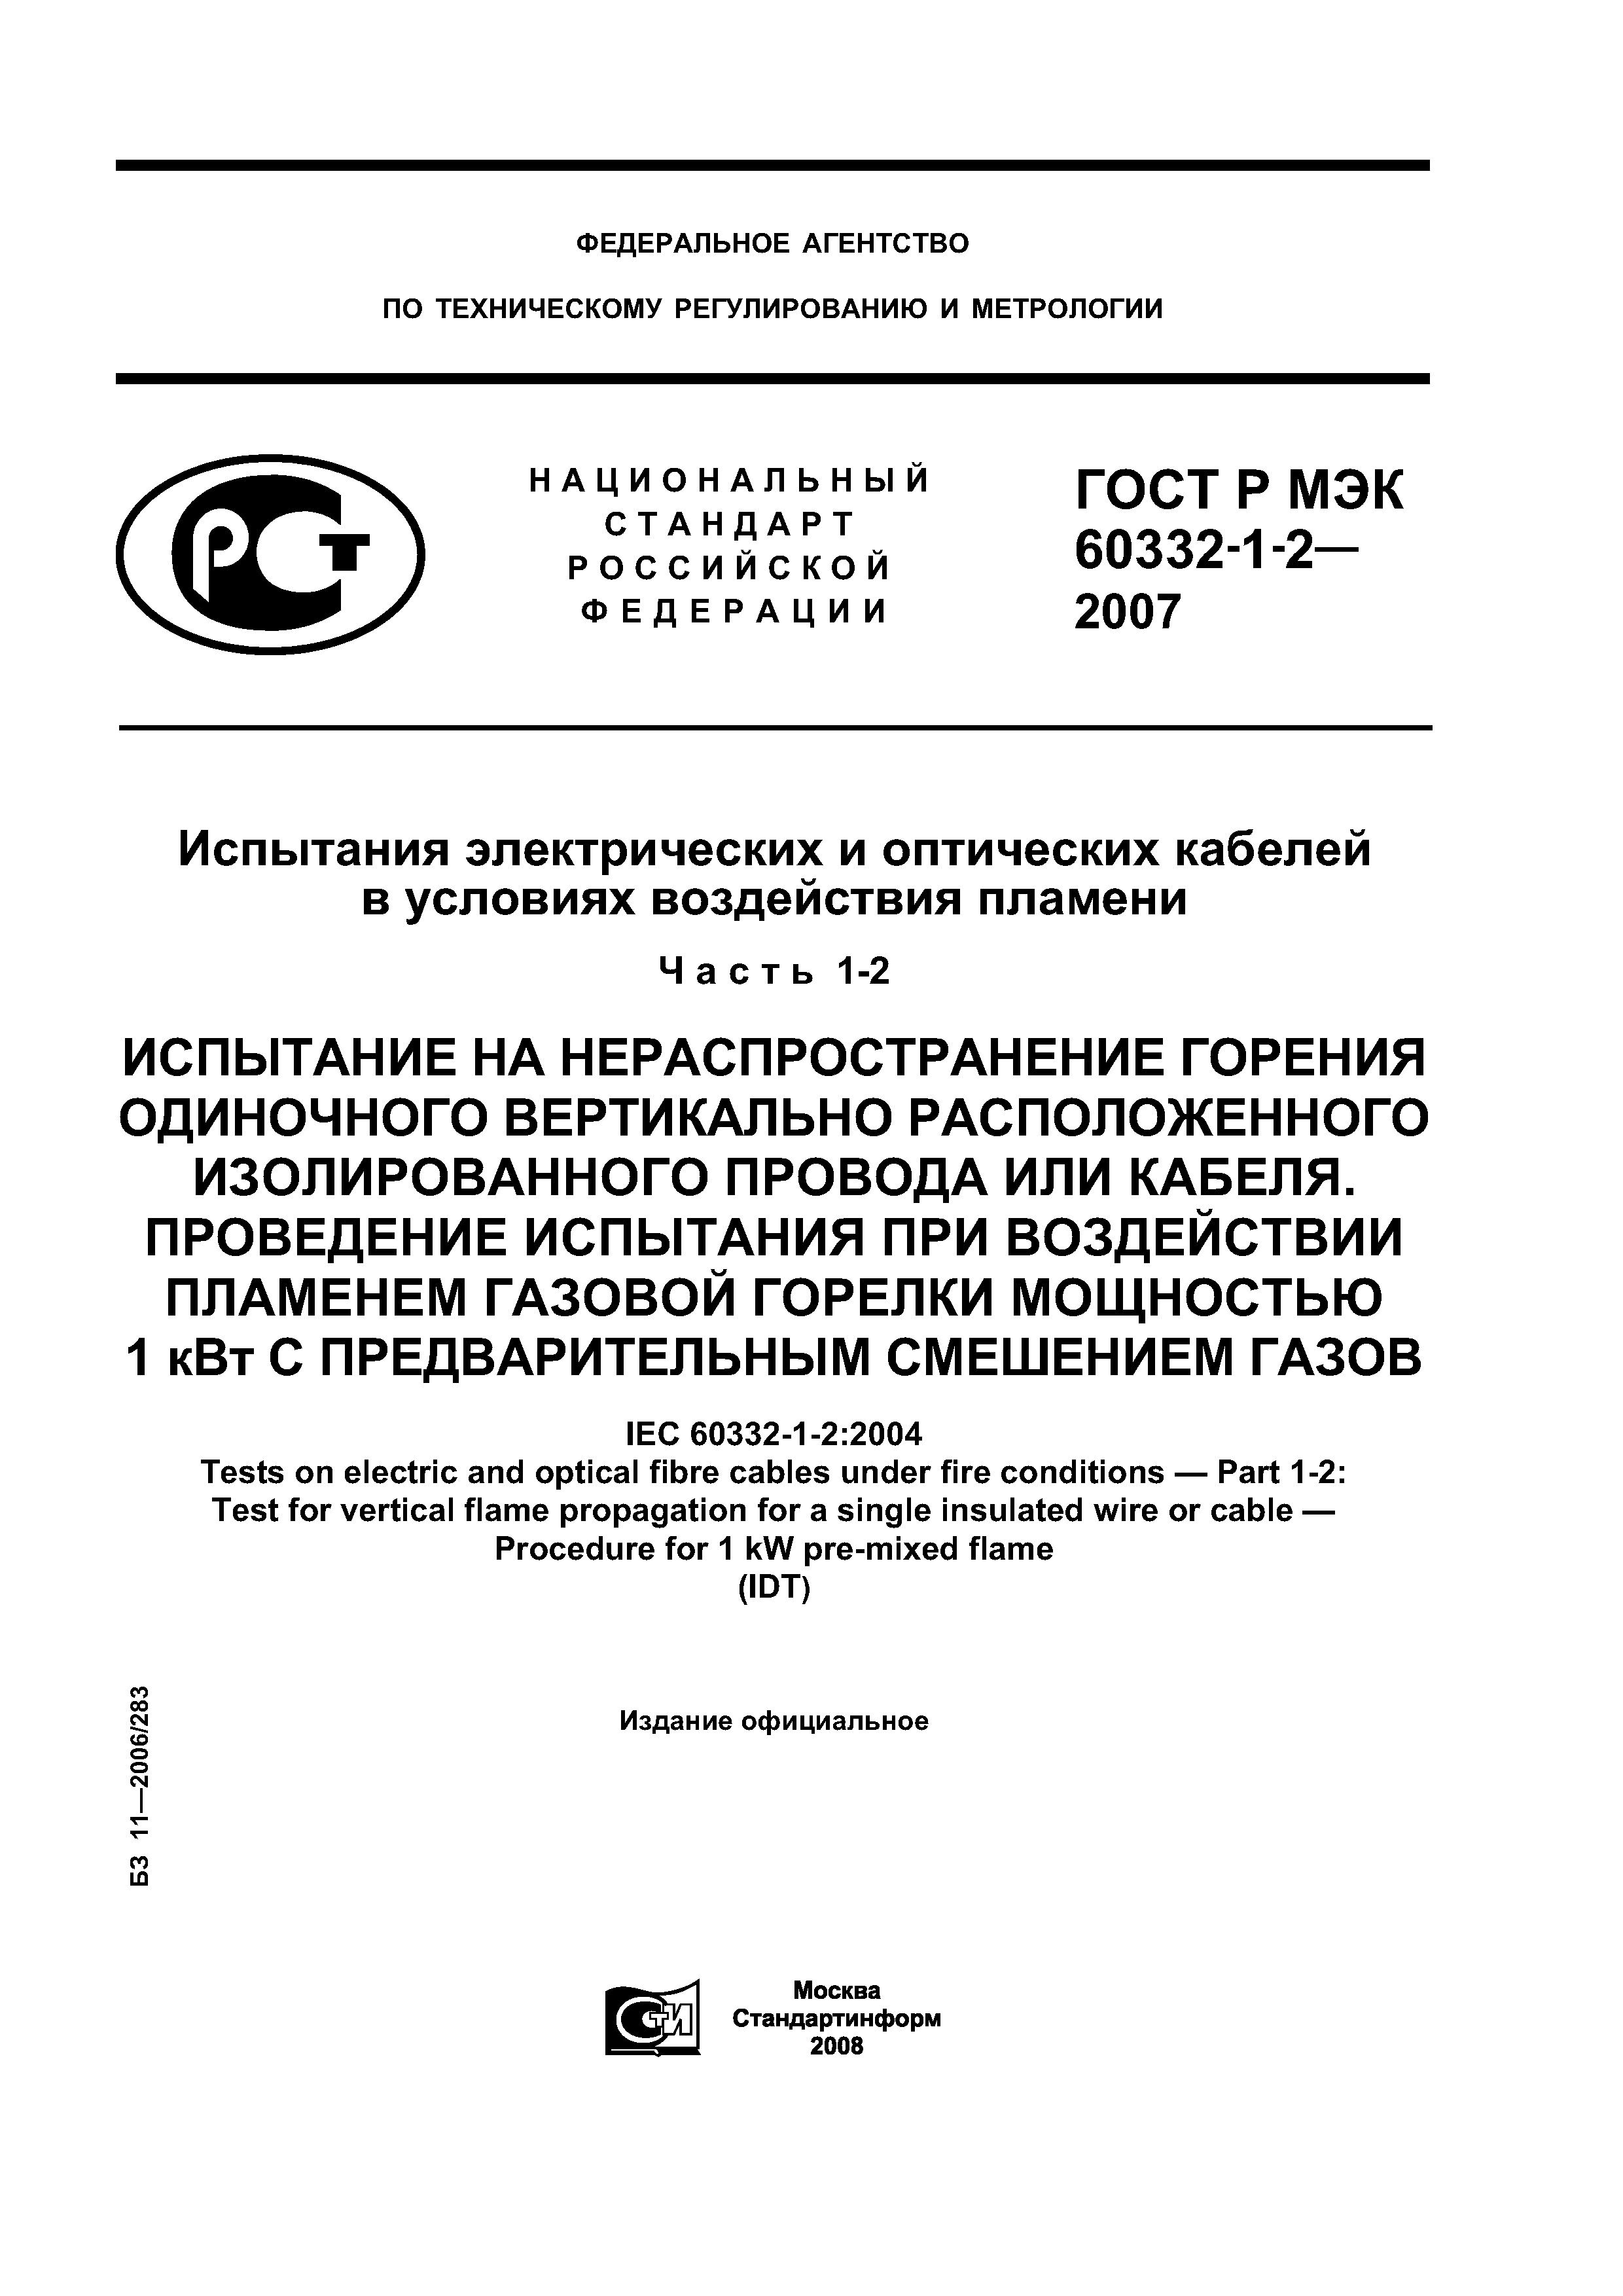 ГОСТ Р МЭК 60332-1-2-2007